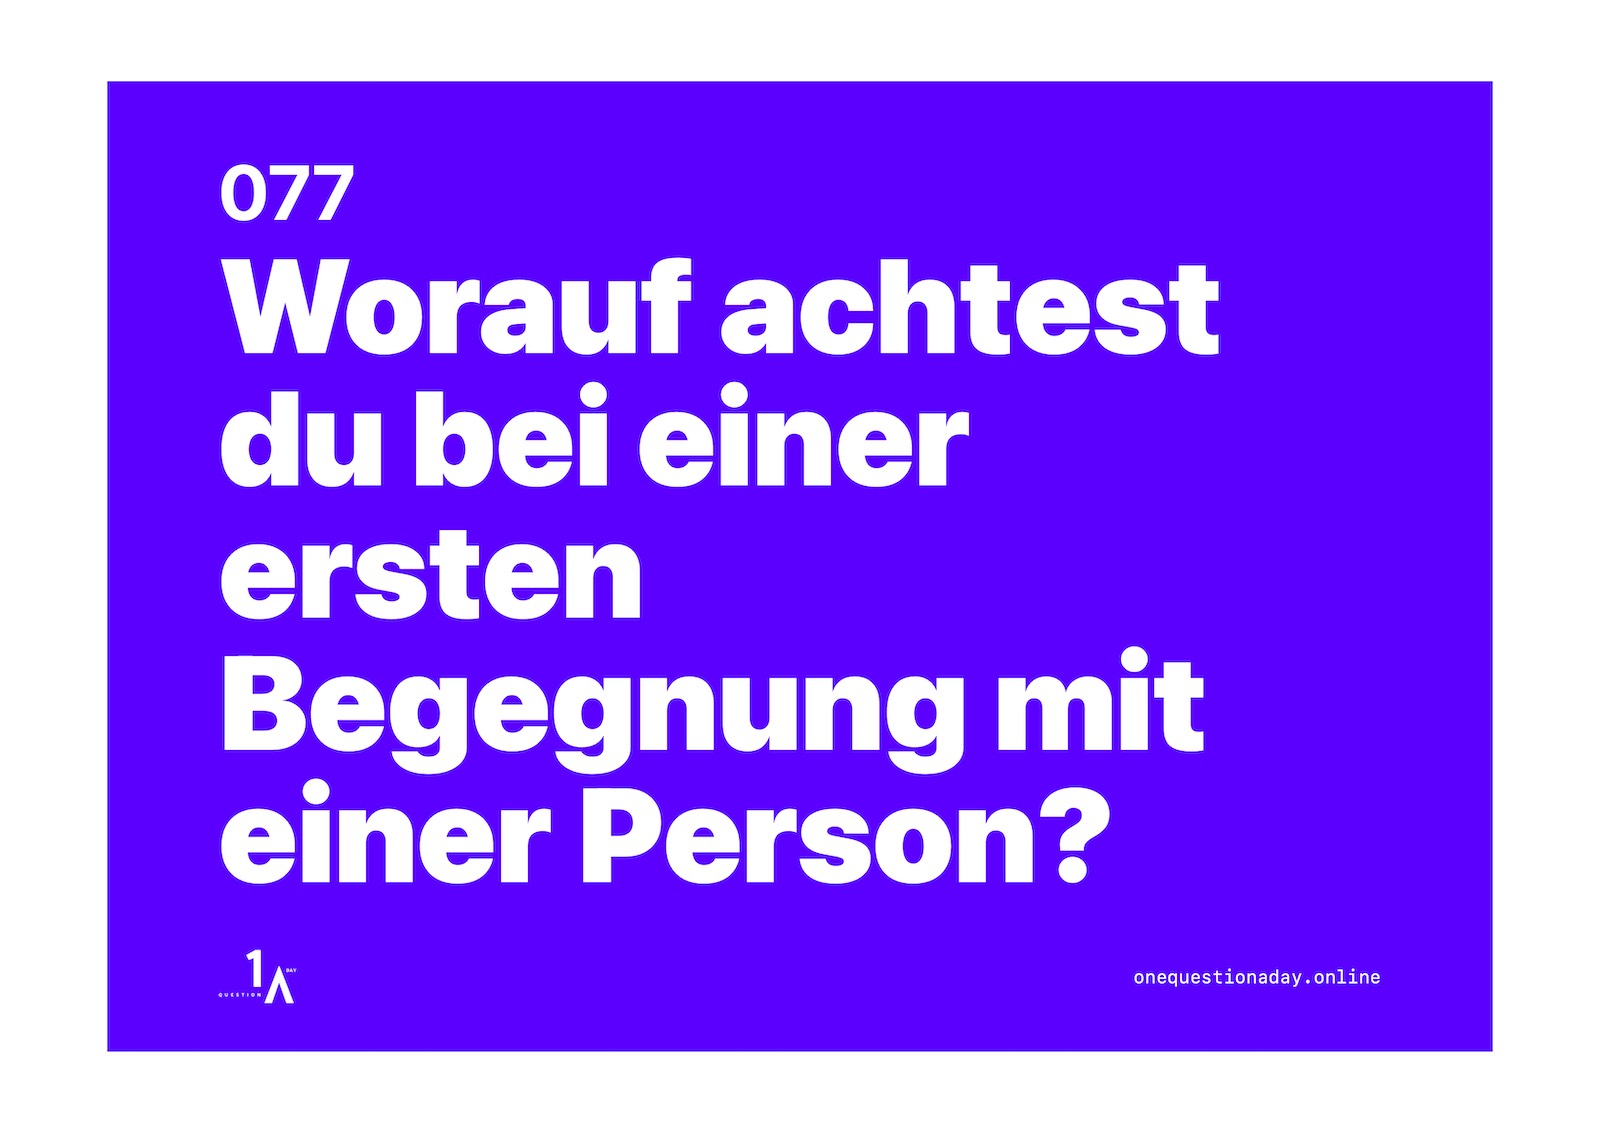 Das Bild ist ein farbiges Poster, auf dem in weisser Schrift die Frage steht: "Worauf achtest du bei einer ersten Begegnung mit einer Person?"